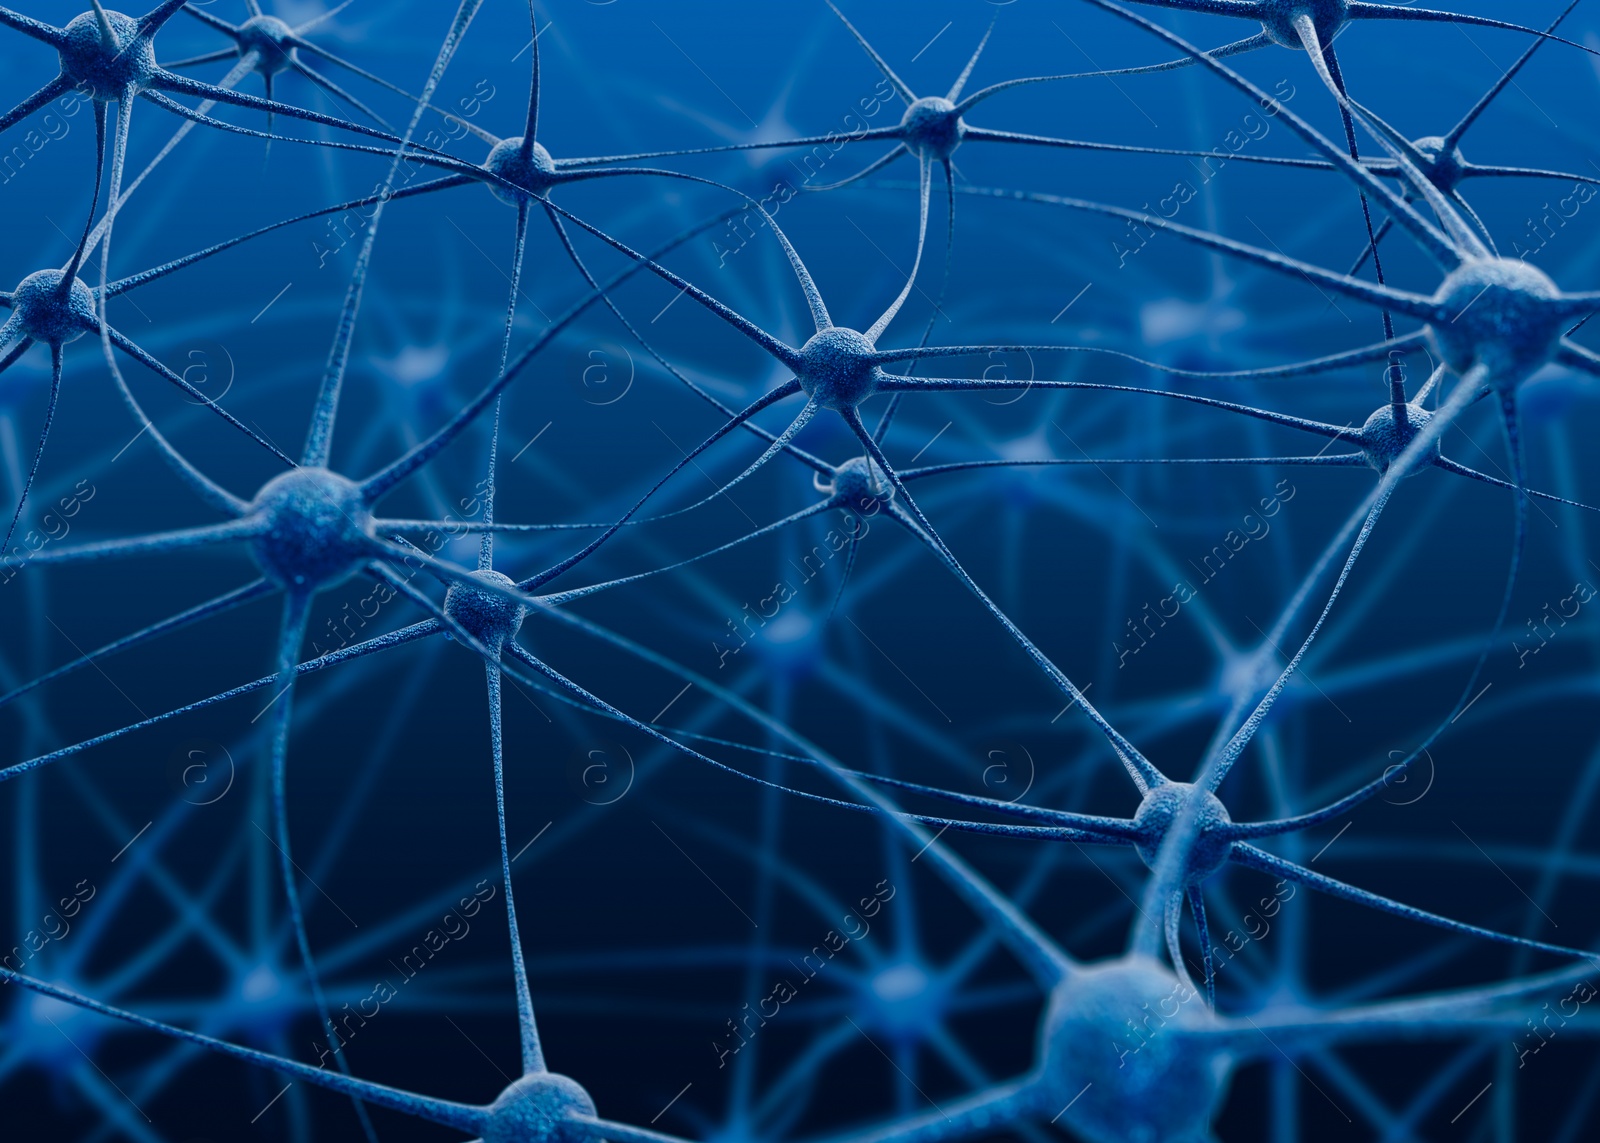 Illustration of Nervous system. Biological neural network on blue background, illustration